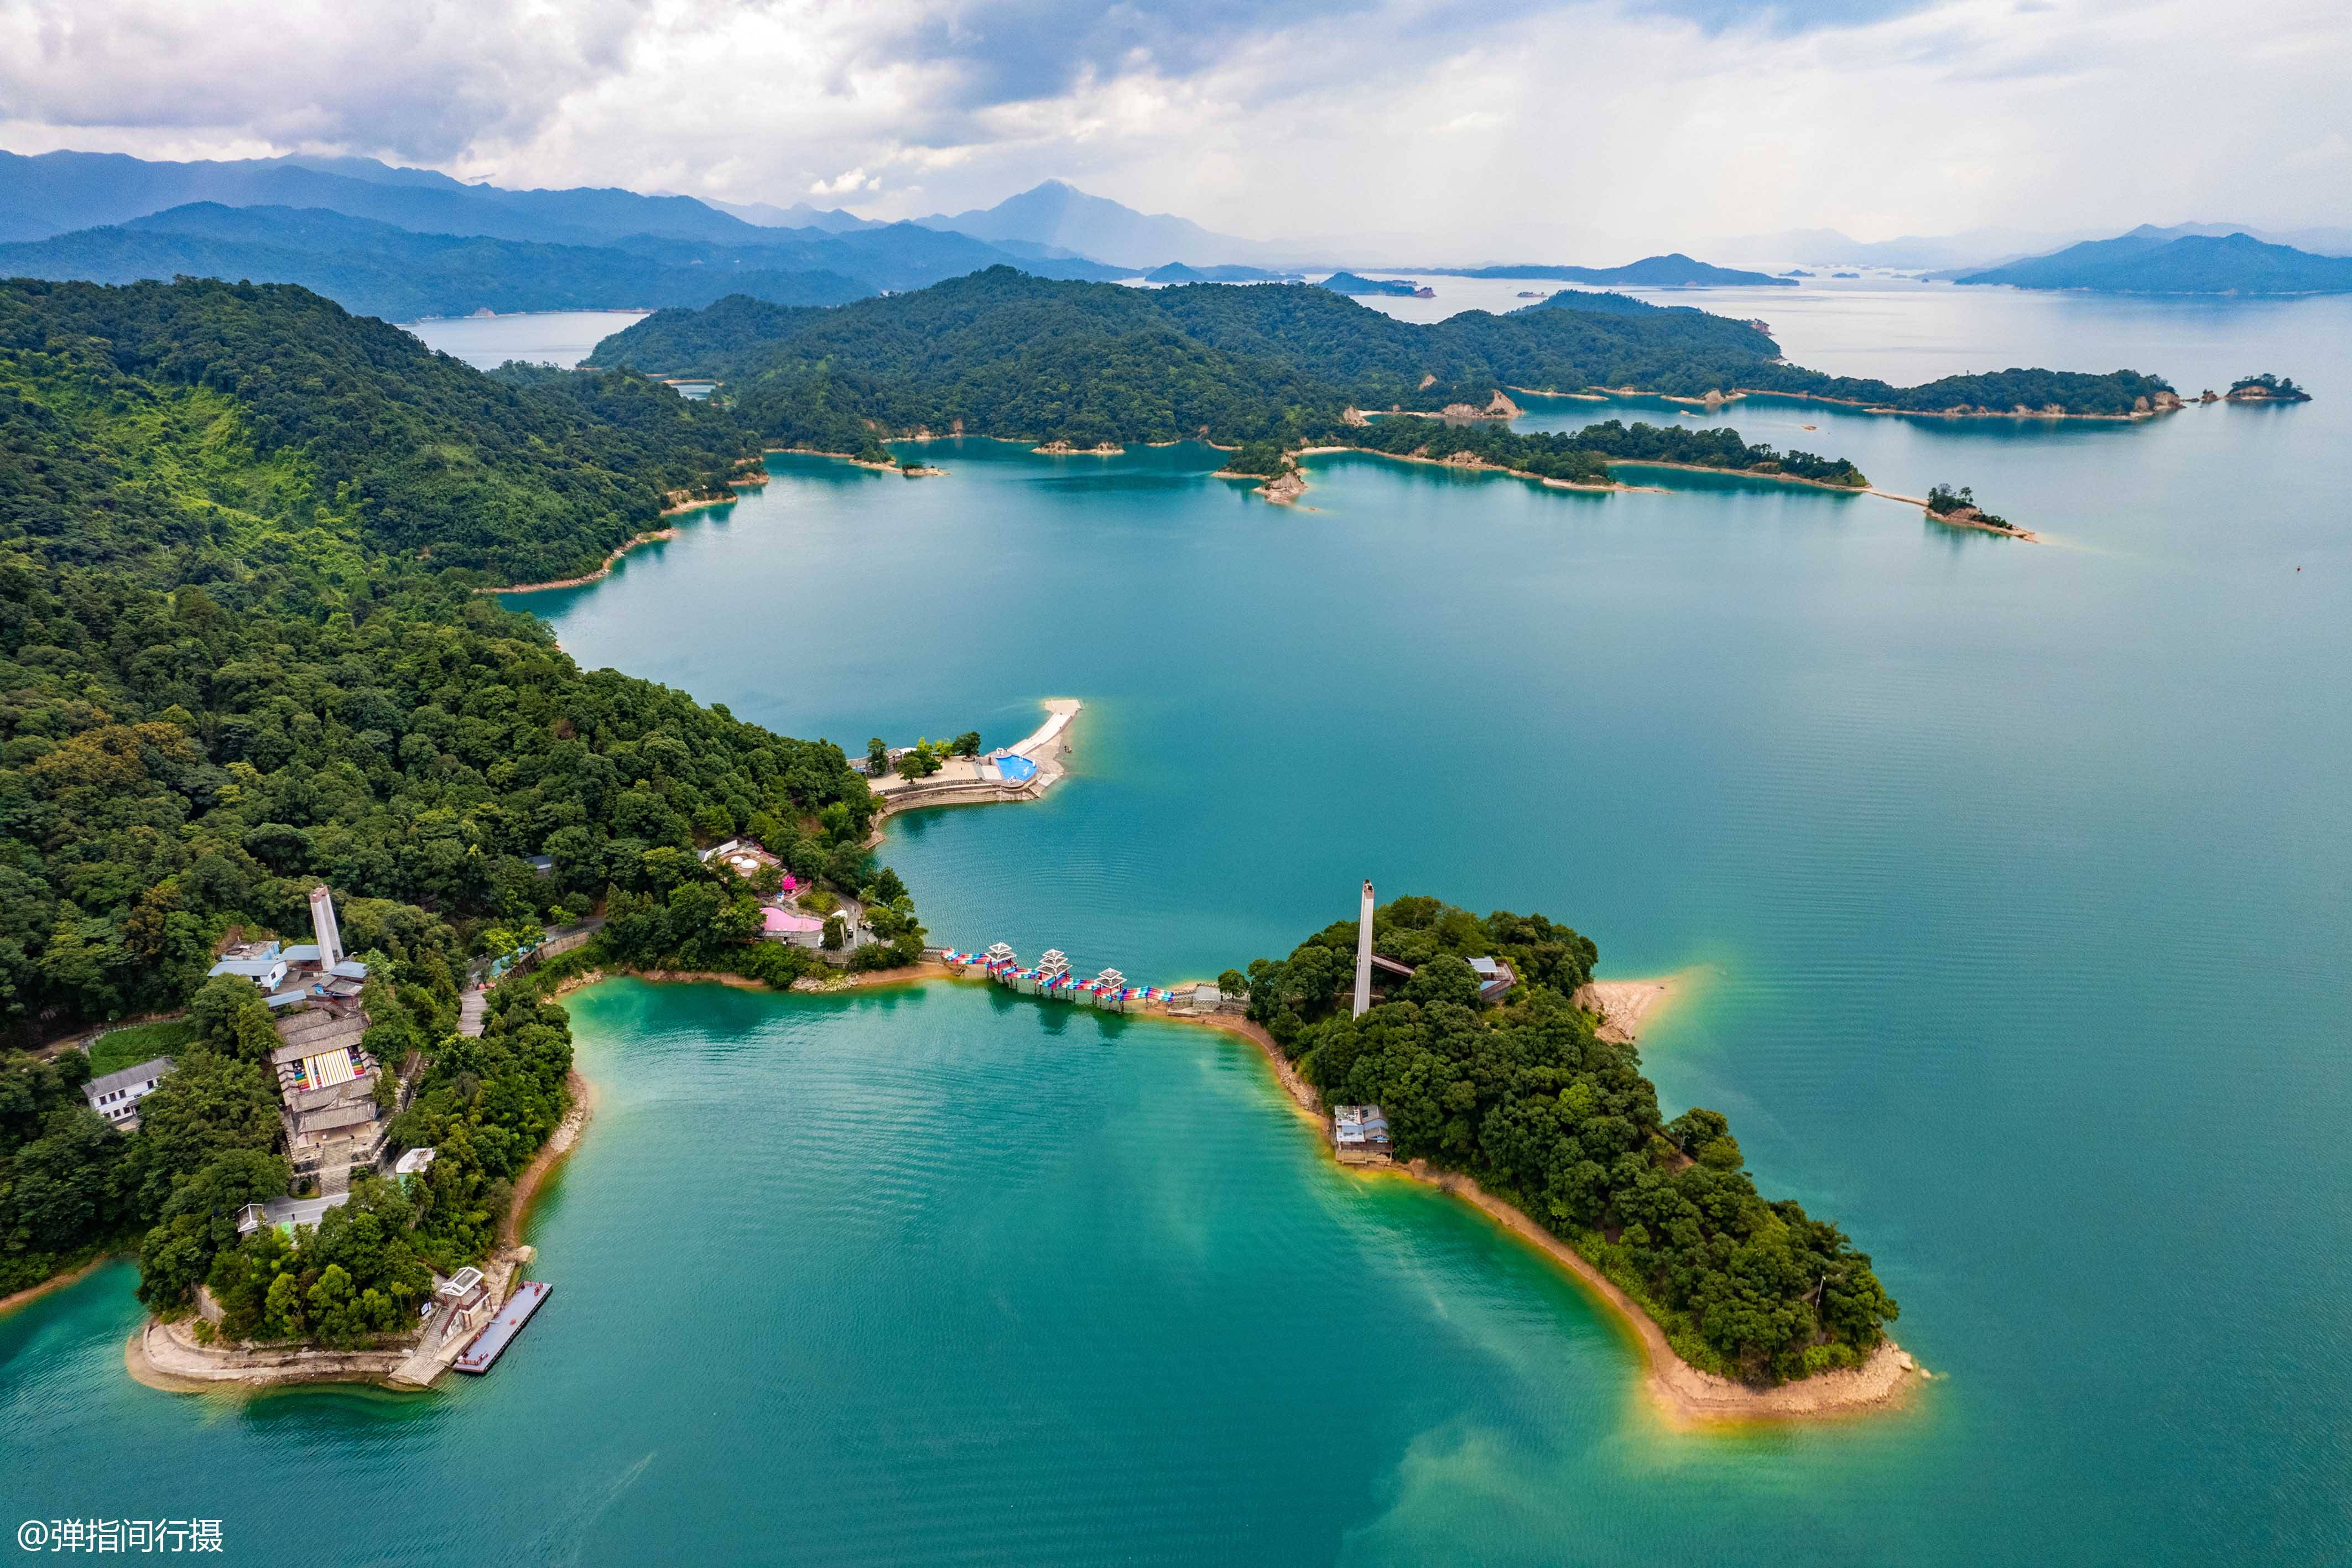 广东最大的湖泊,风景美如仙境,是主供香港的饮用水源地